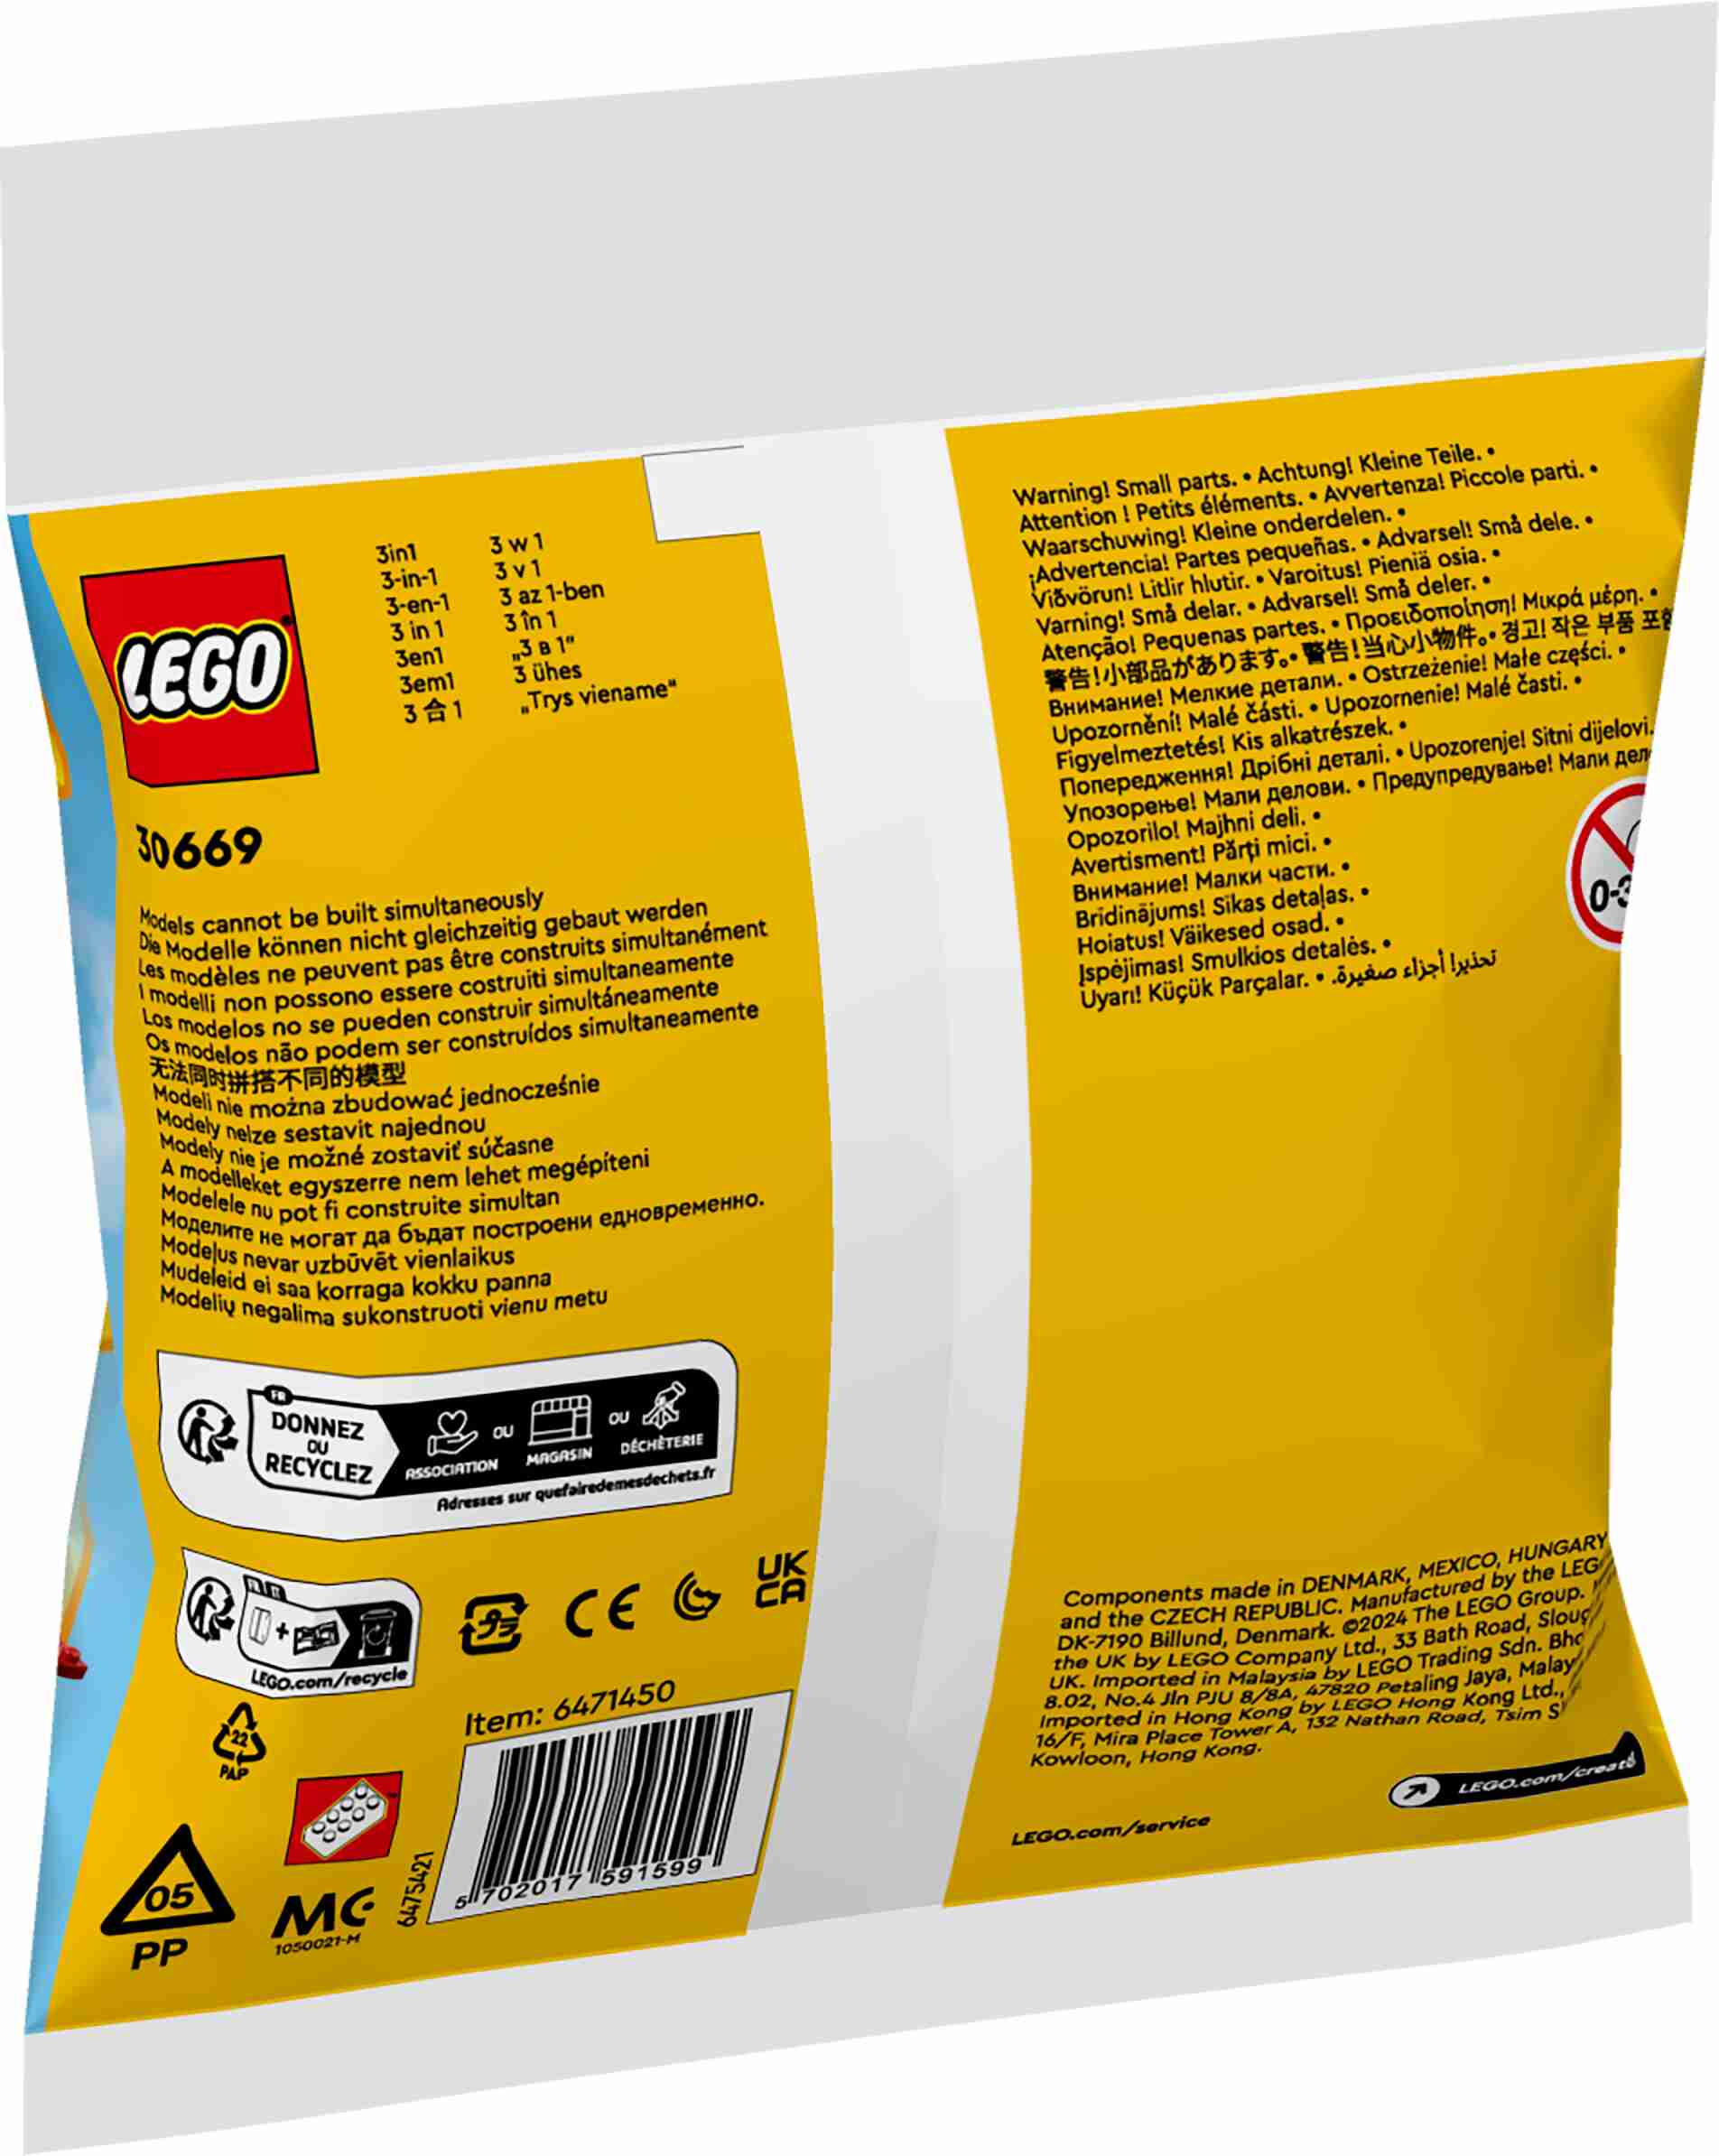 LEGO 30669 Creator Legendärer roter Flieger